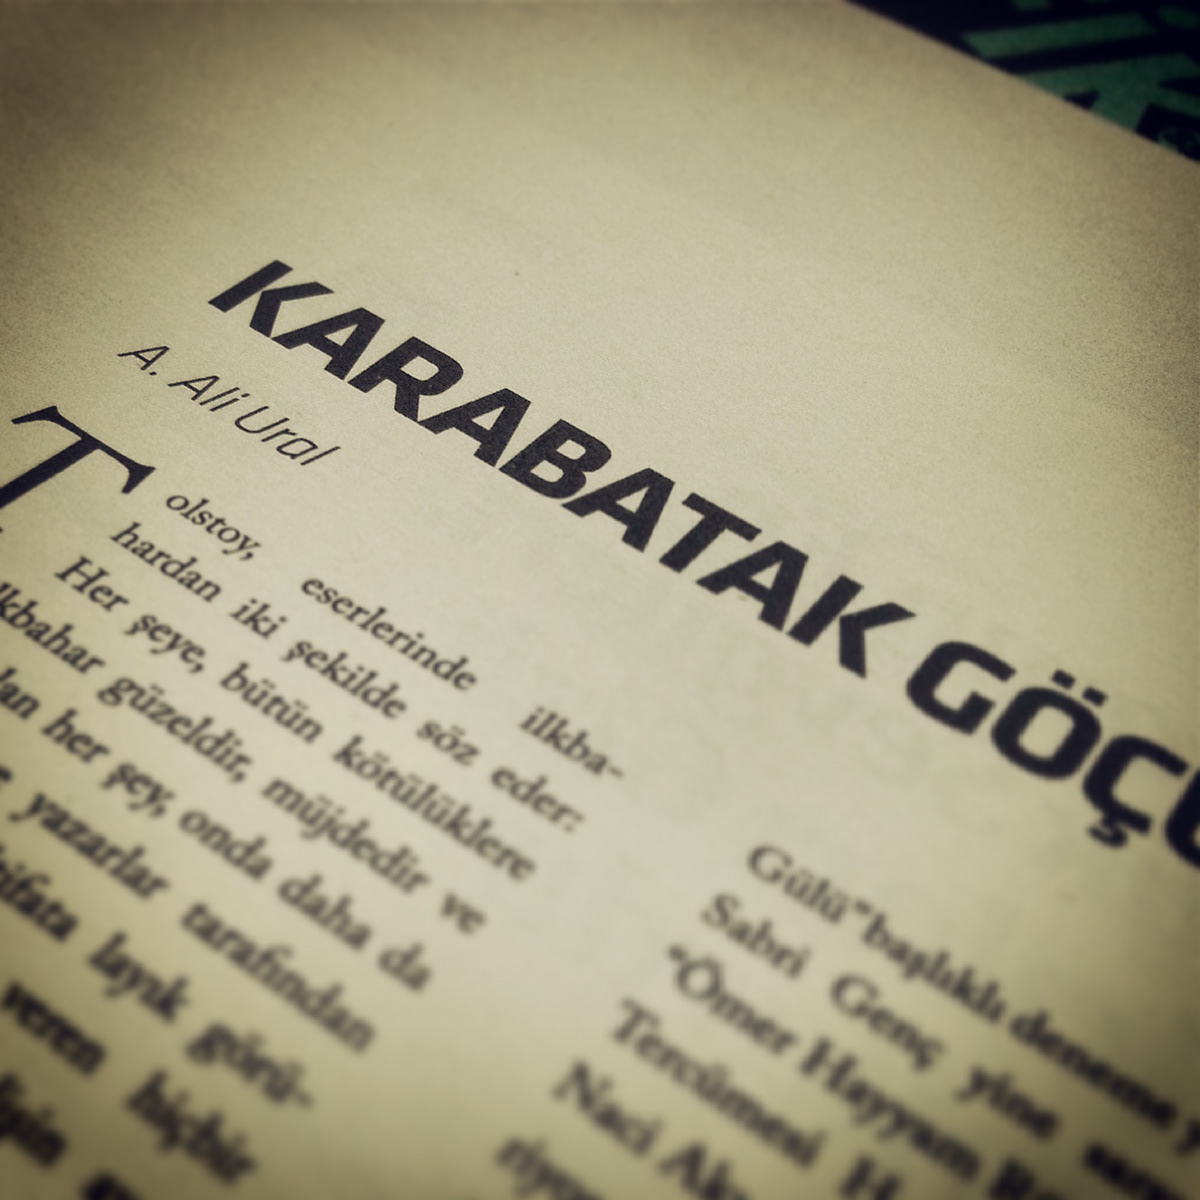 ali ural sedat gever oya iseri gever istanbul edebiyat sanat tipografi şiir poem Dergi magazine